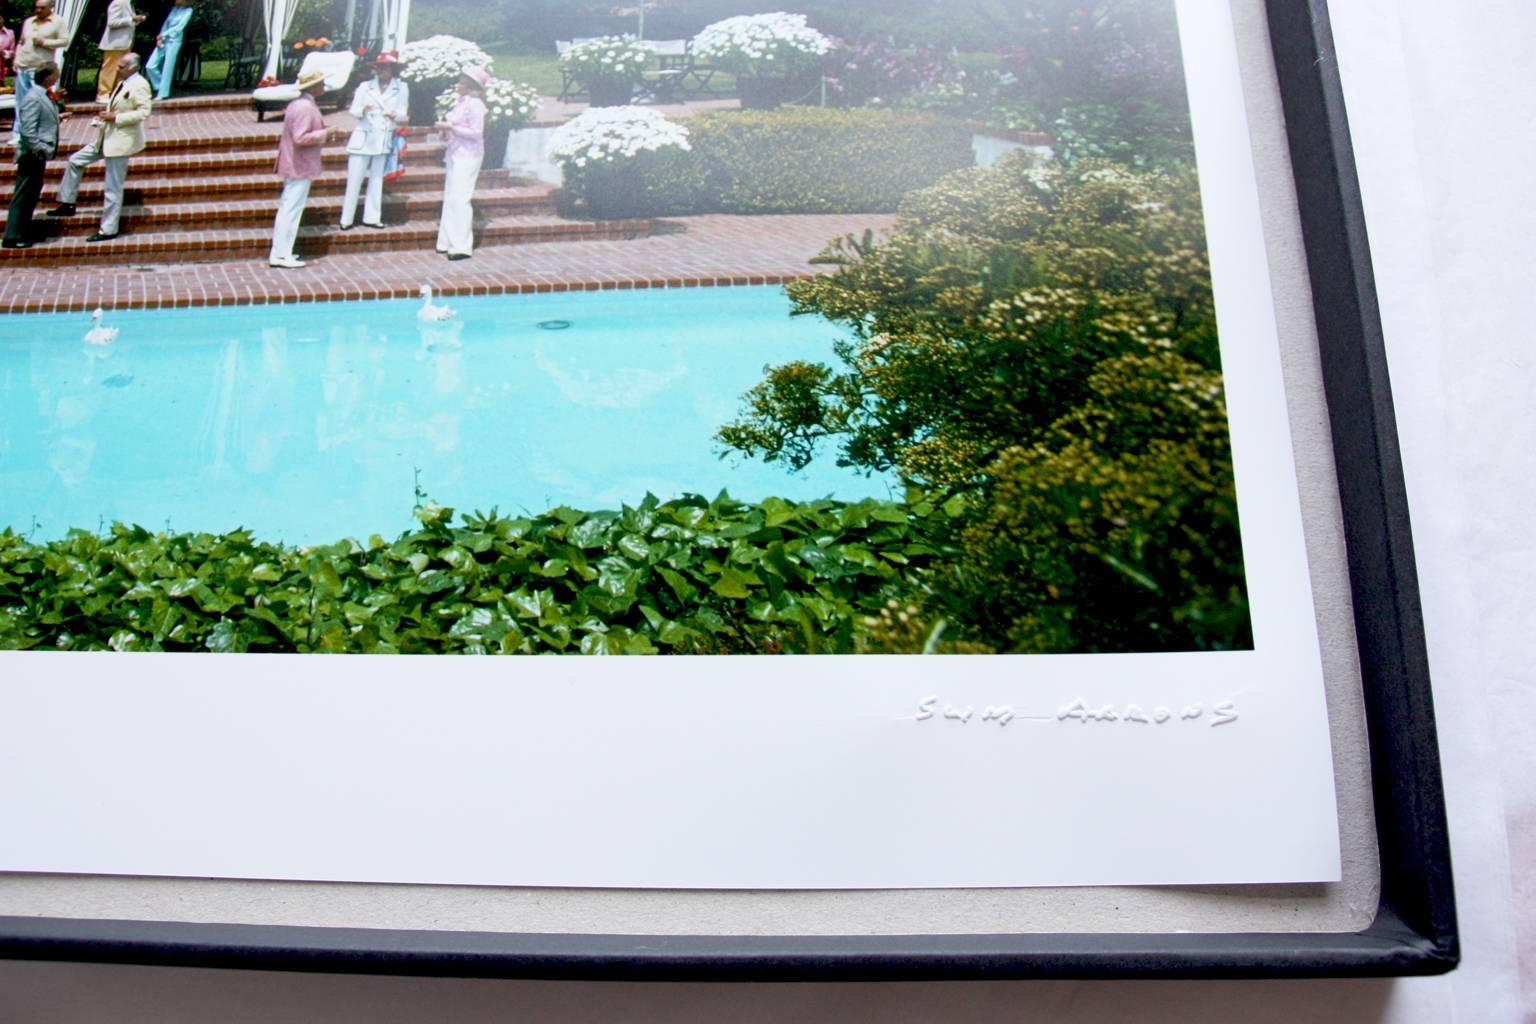 'Pool On Amalfi Coast' Italy (Estate Stamped Edition) 1